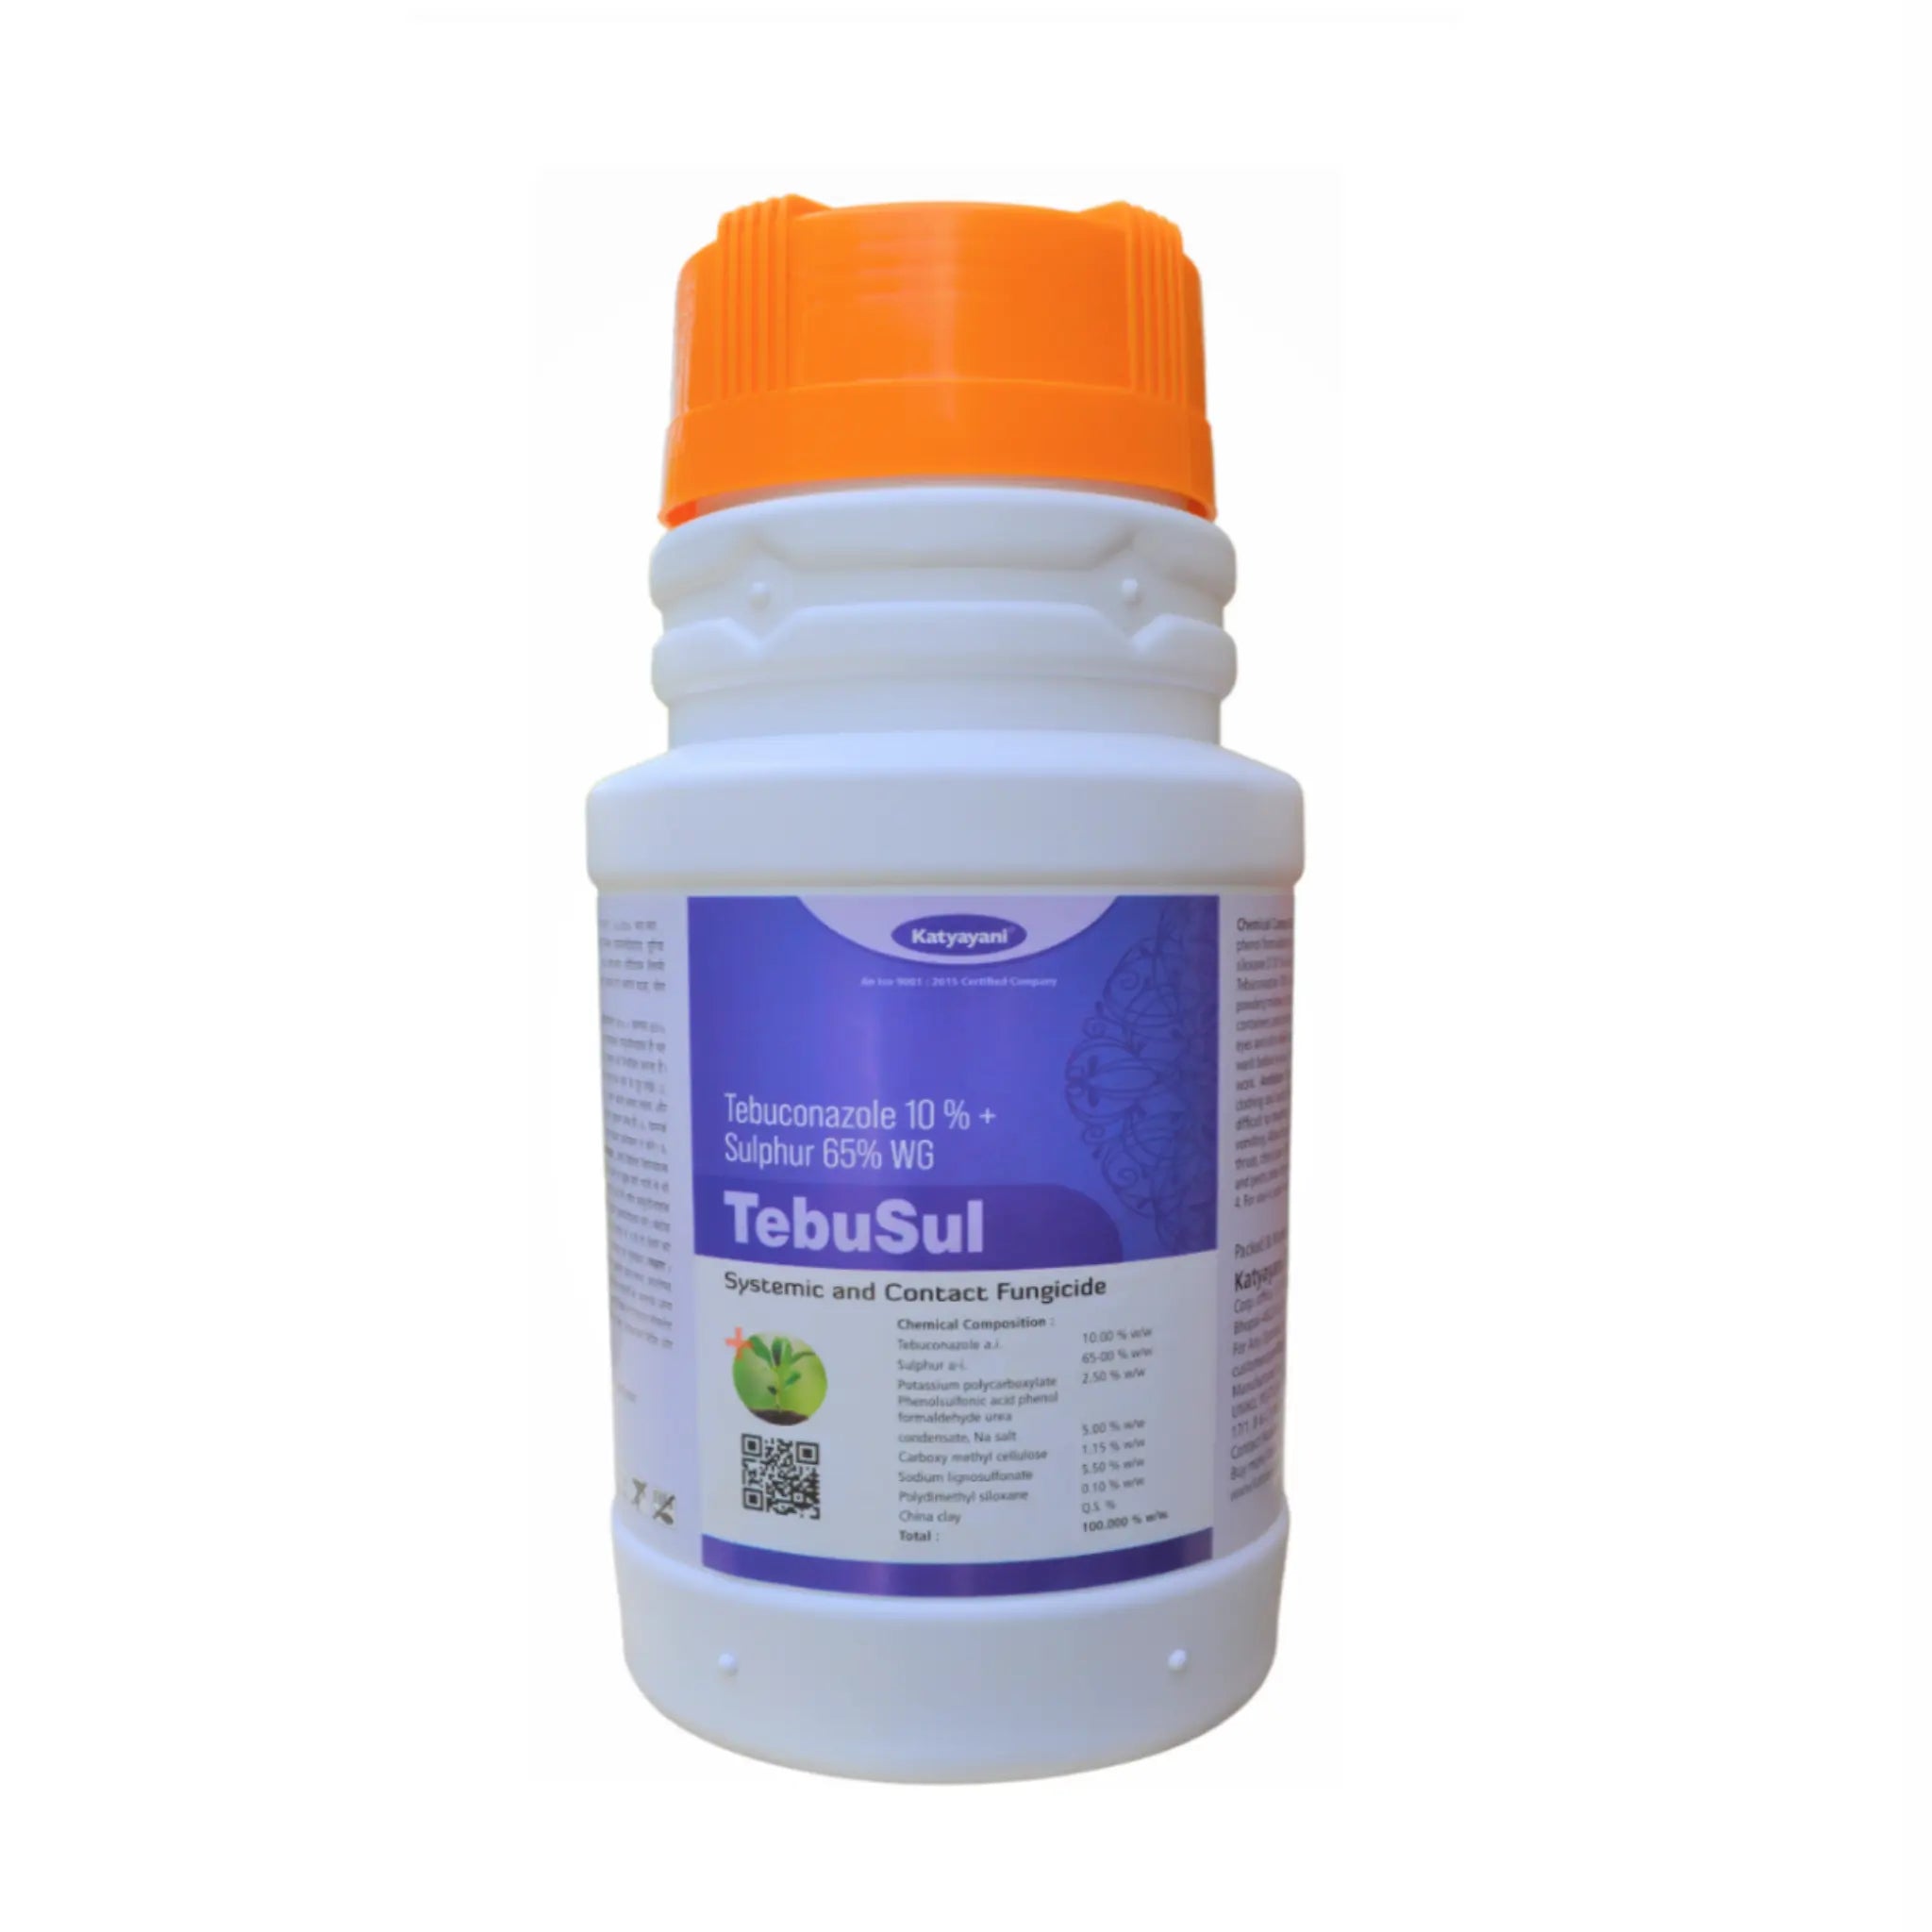 ಕಾತ್ಯಾಯನಿ ಟೆಬುಕೊನಜೋಲ್ 10 % + ಸಲ್ಫರ್ 65 % wg TEBUSUL- ಶಿಲೀಂಧ್ರನಾಶಕ 